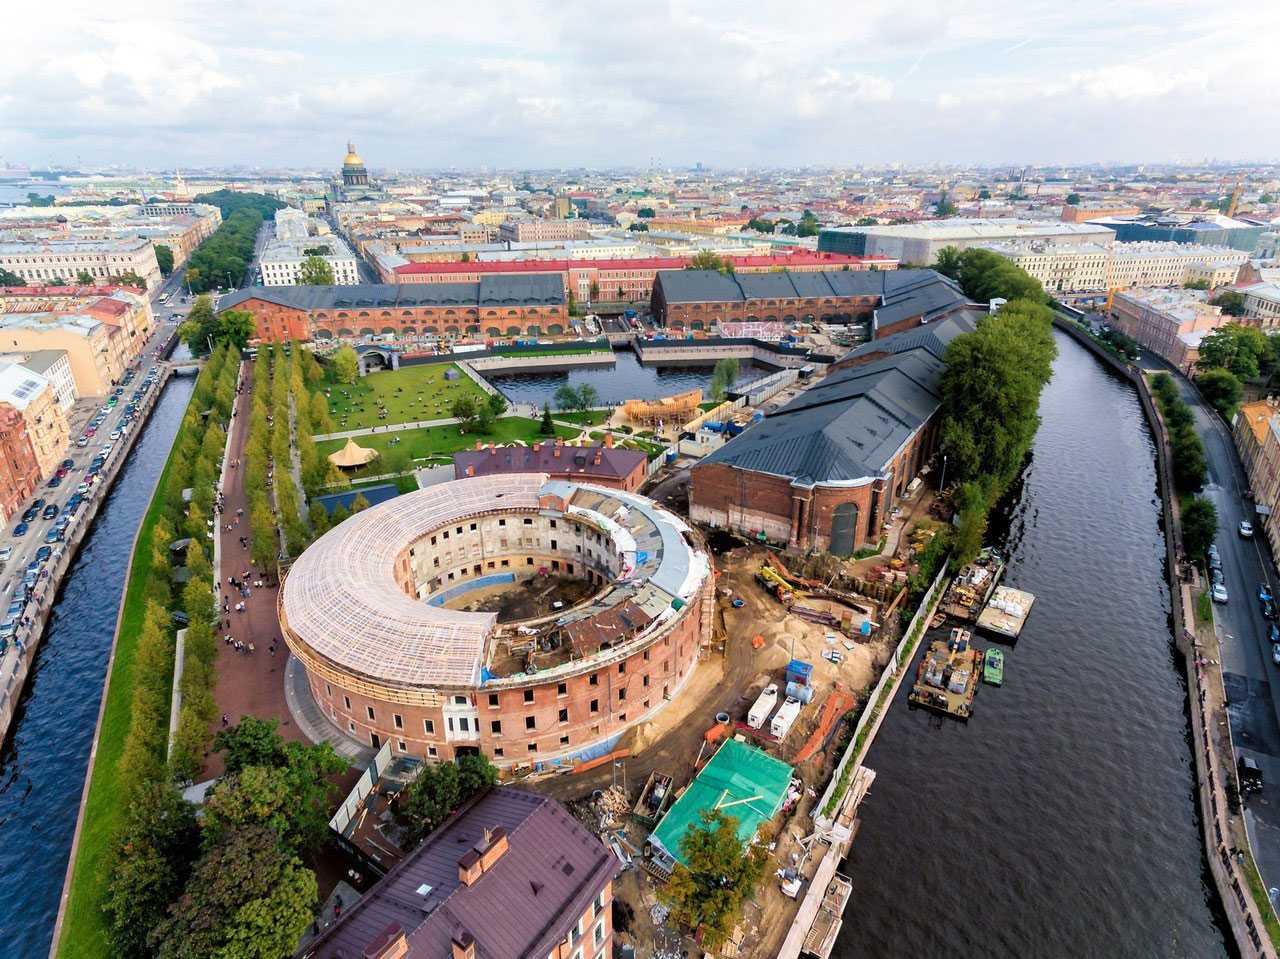 Сенатская площадь в санкт-петербурге, история, архитектура, фото